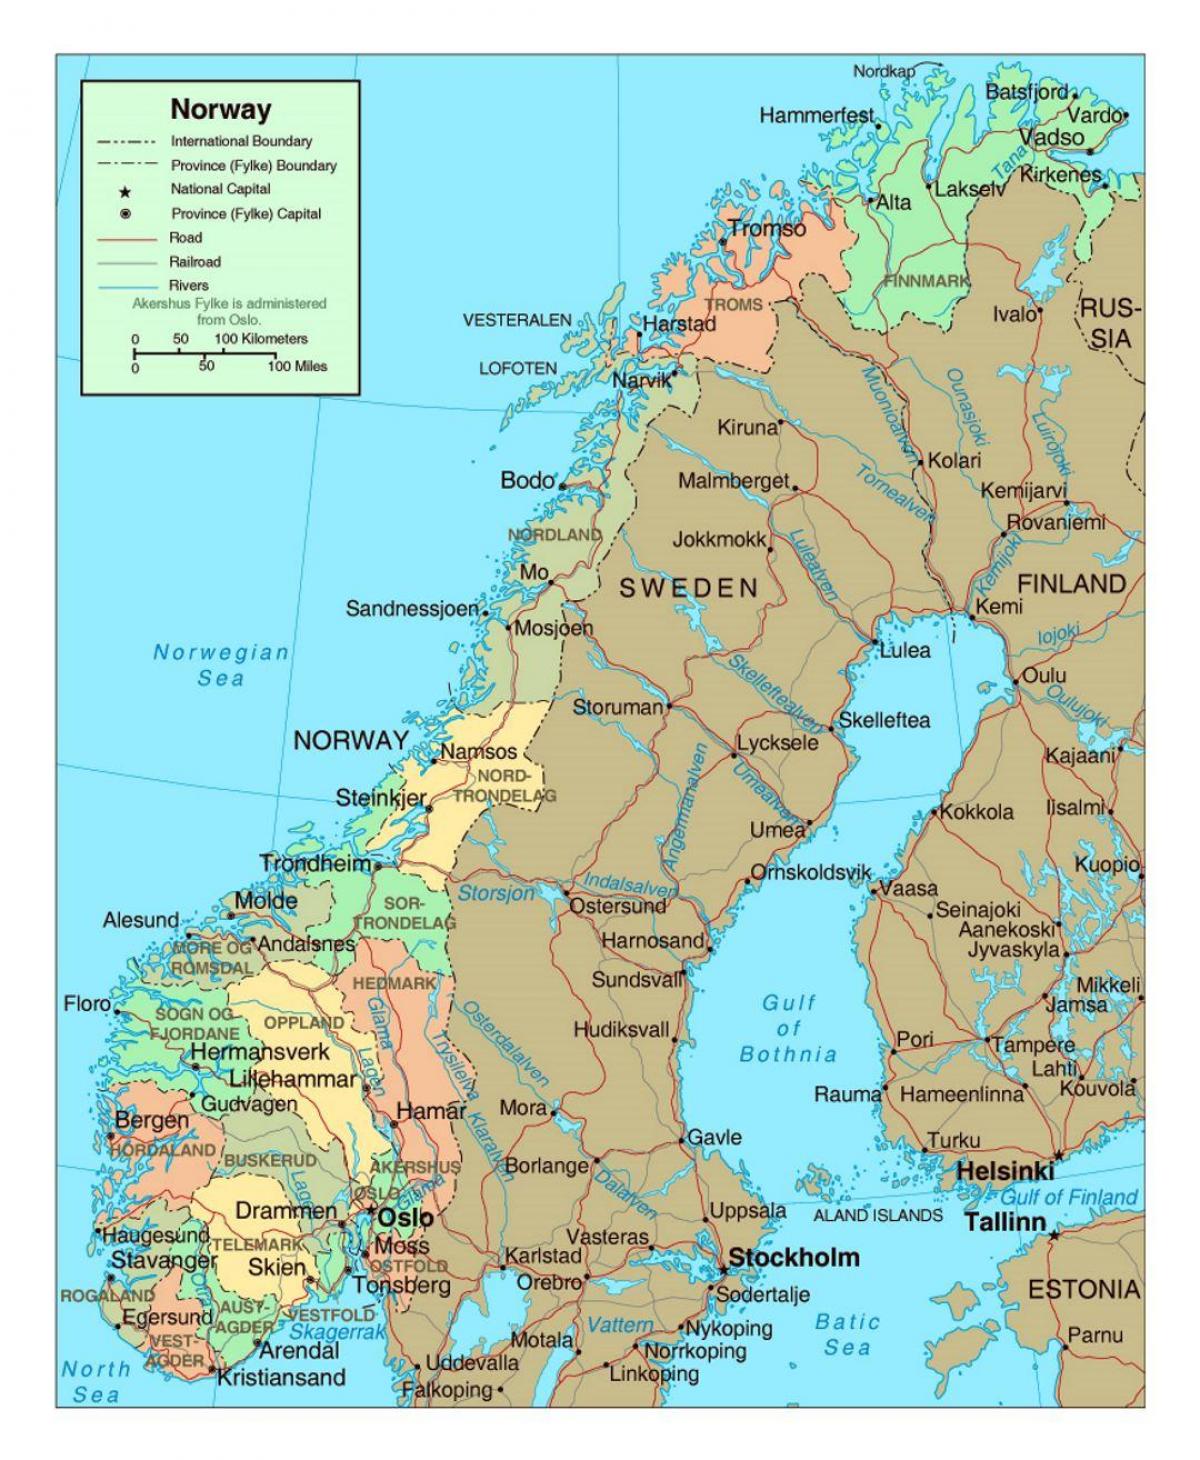 Yol xəritəsi Norveç şəhərləri ilə